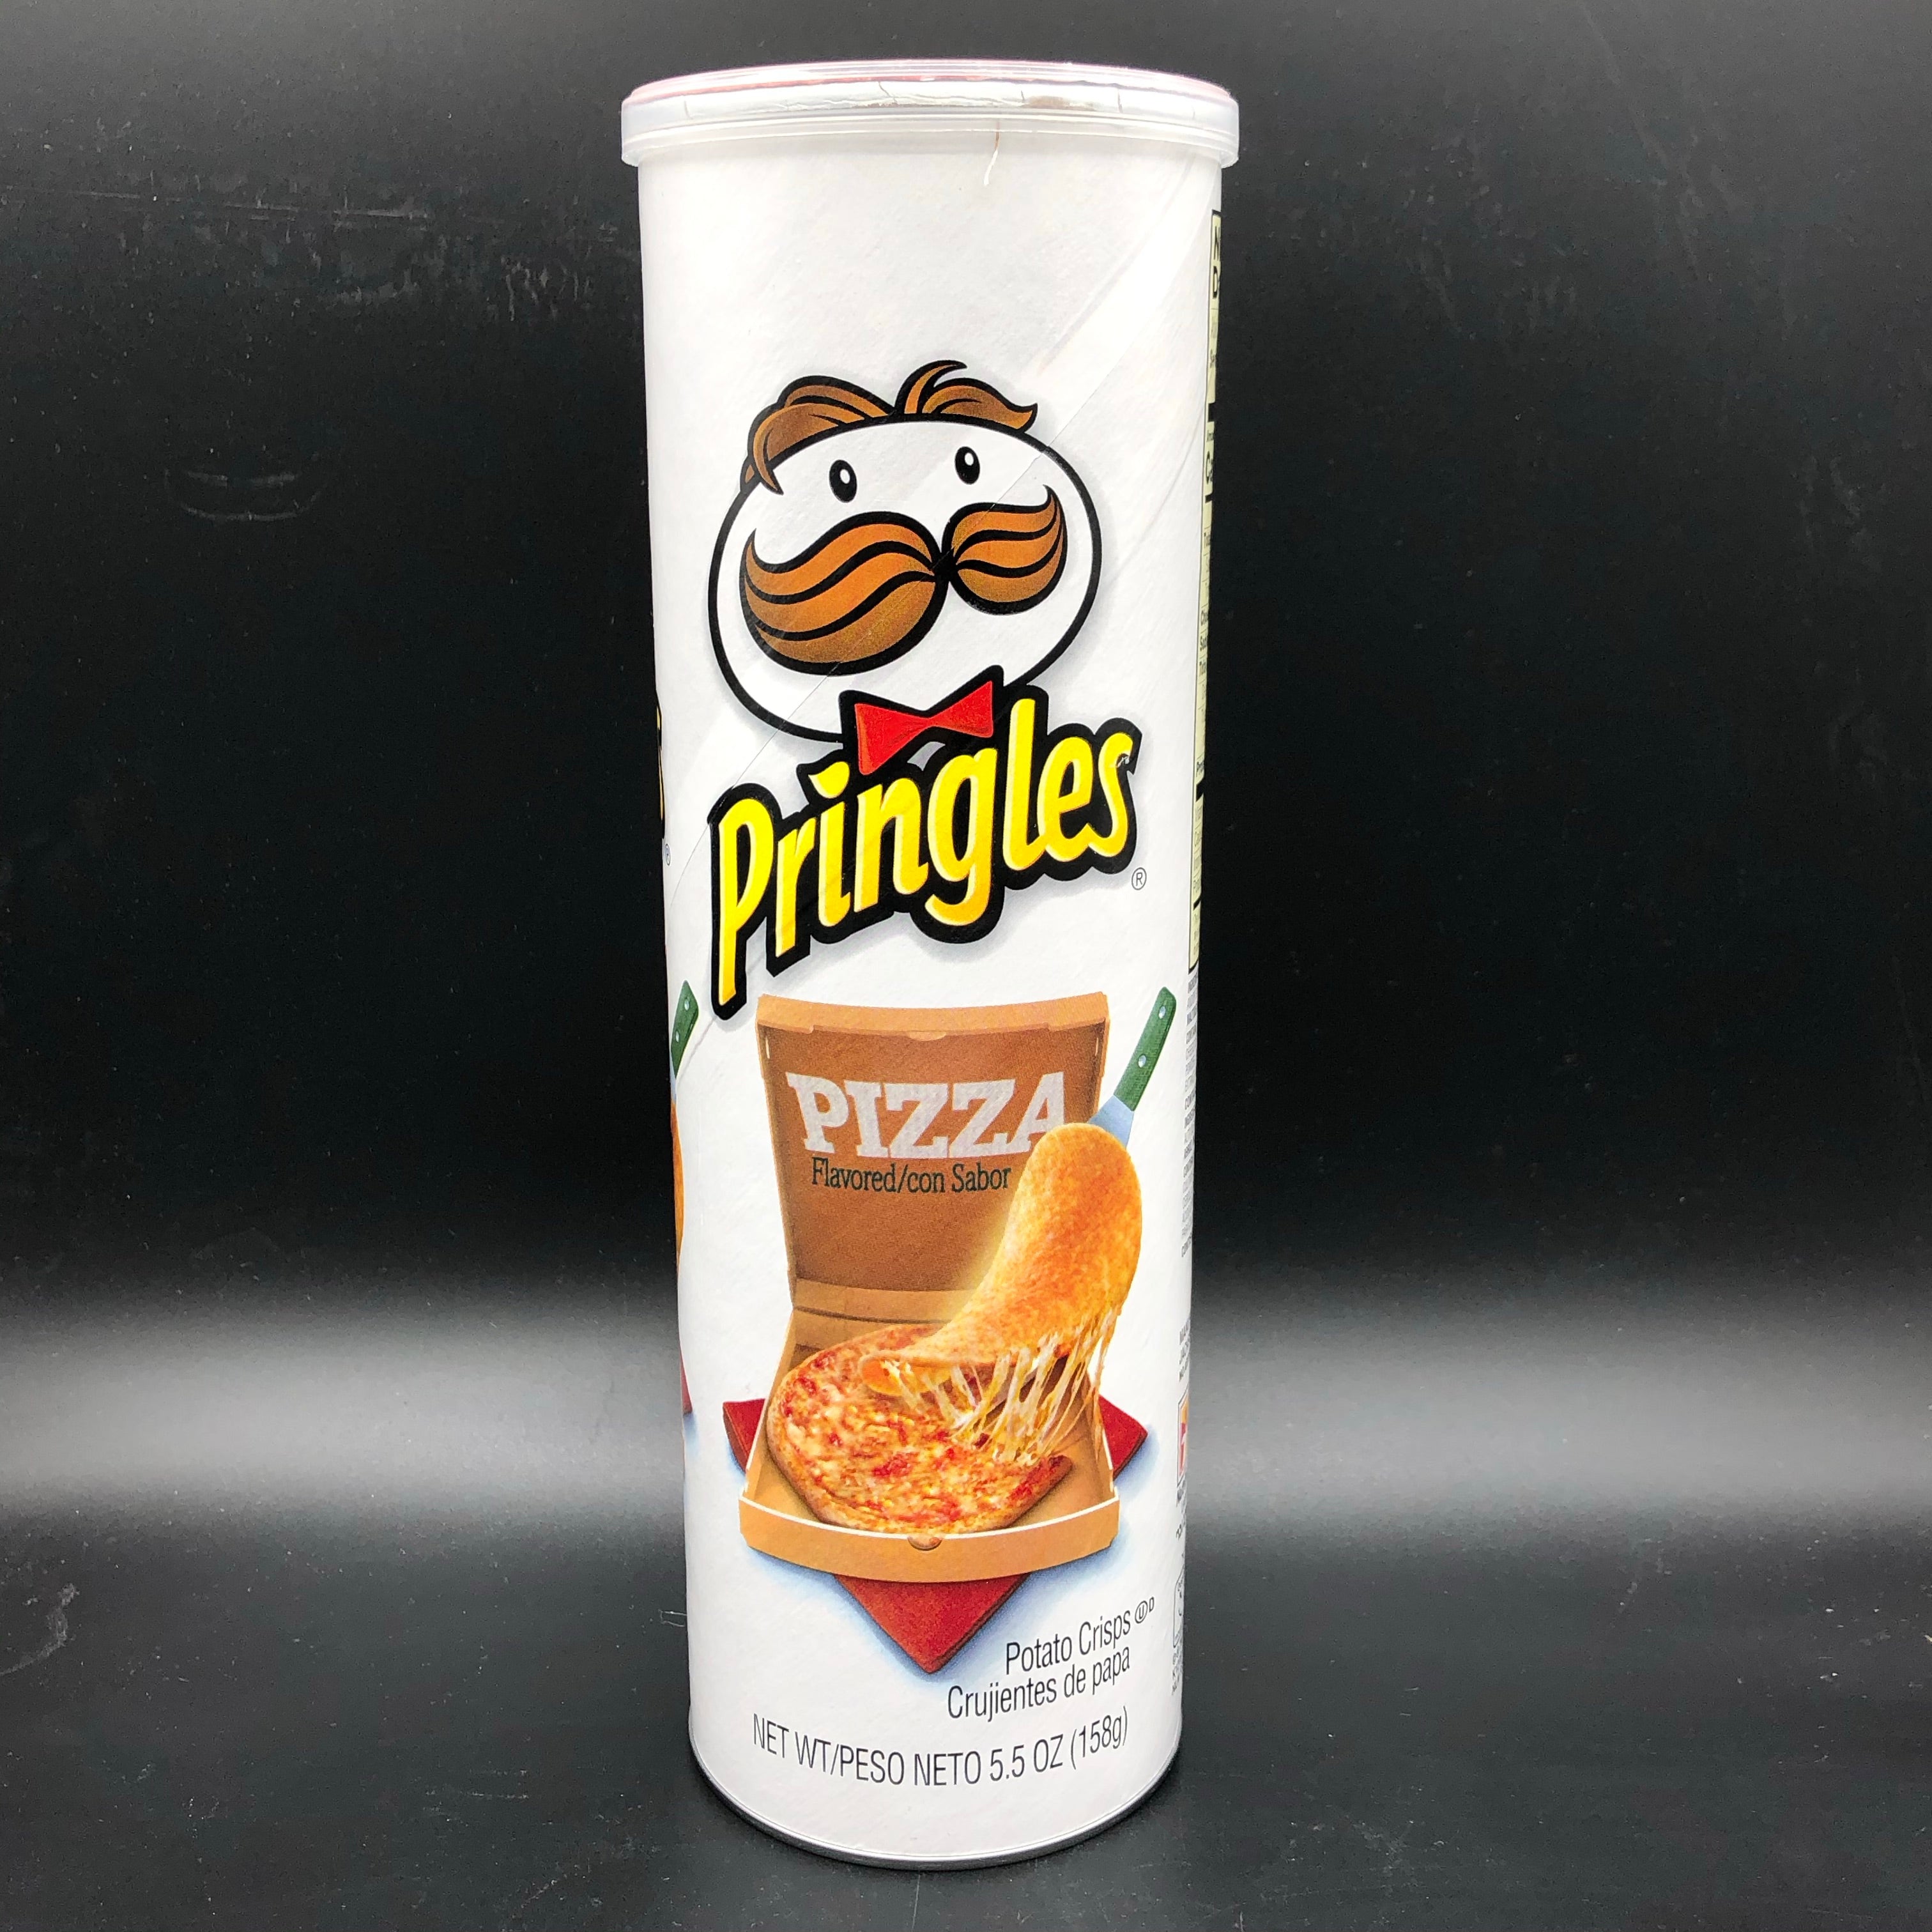 Pringles Pizza Flavored Potato Crisps Chips - 5.5oz